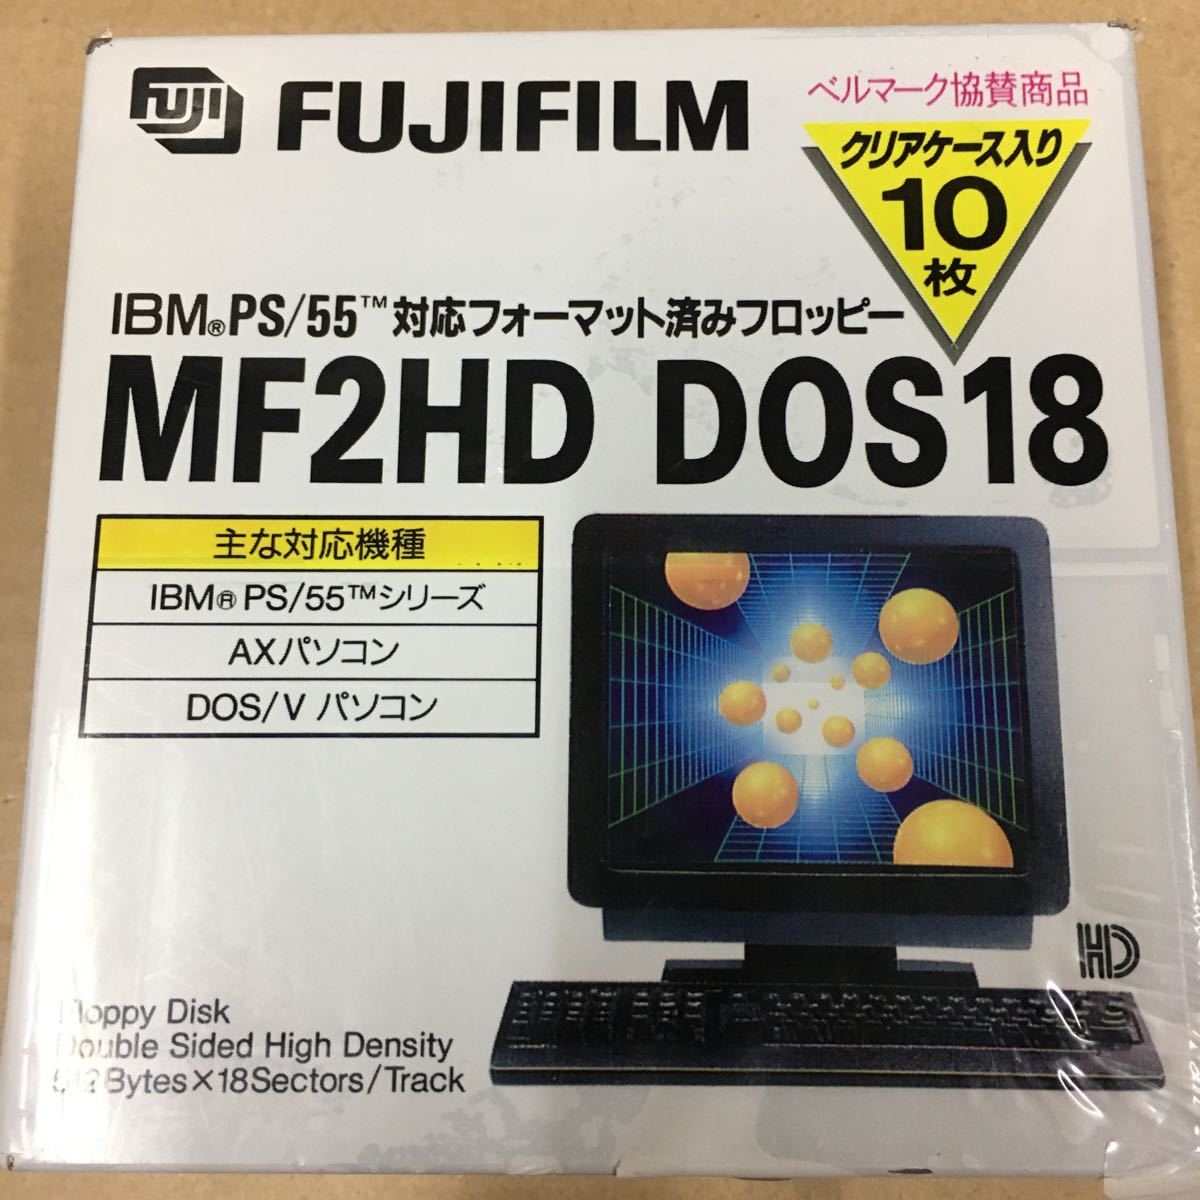 フロッピー ディスク　FUJIFILM MF2HD DOS18 IBM PS/55 DOS/V 3.5インチ